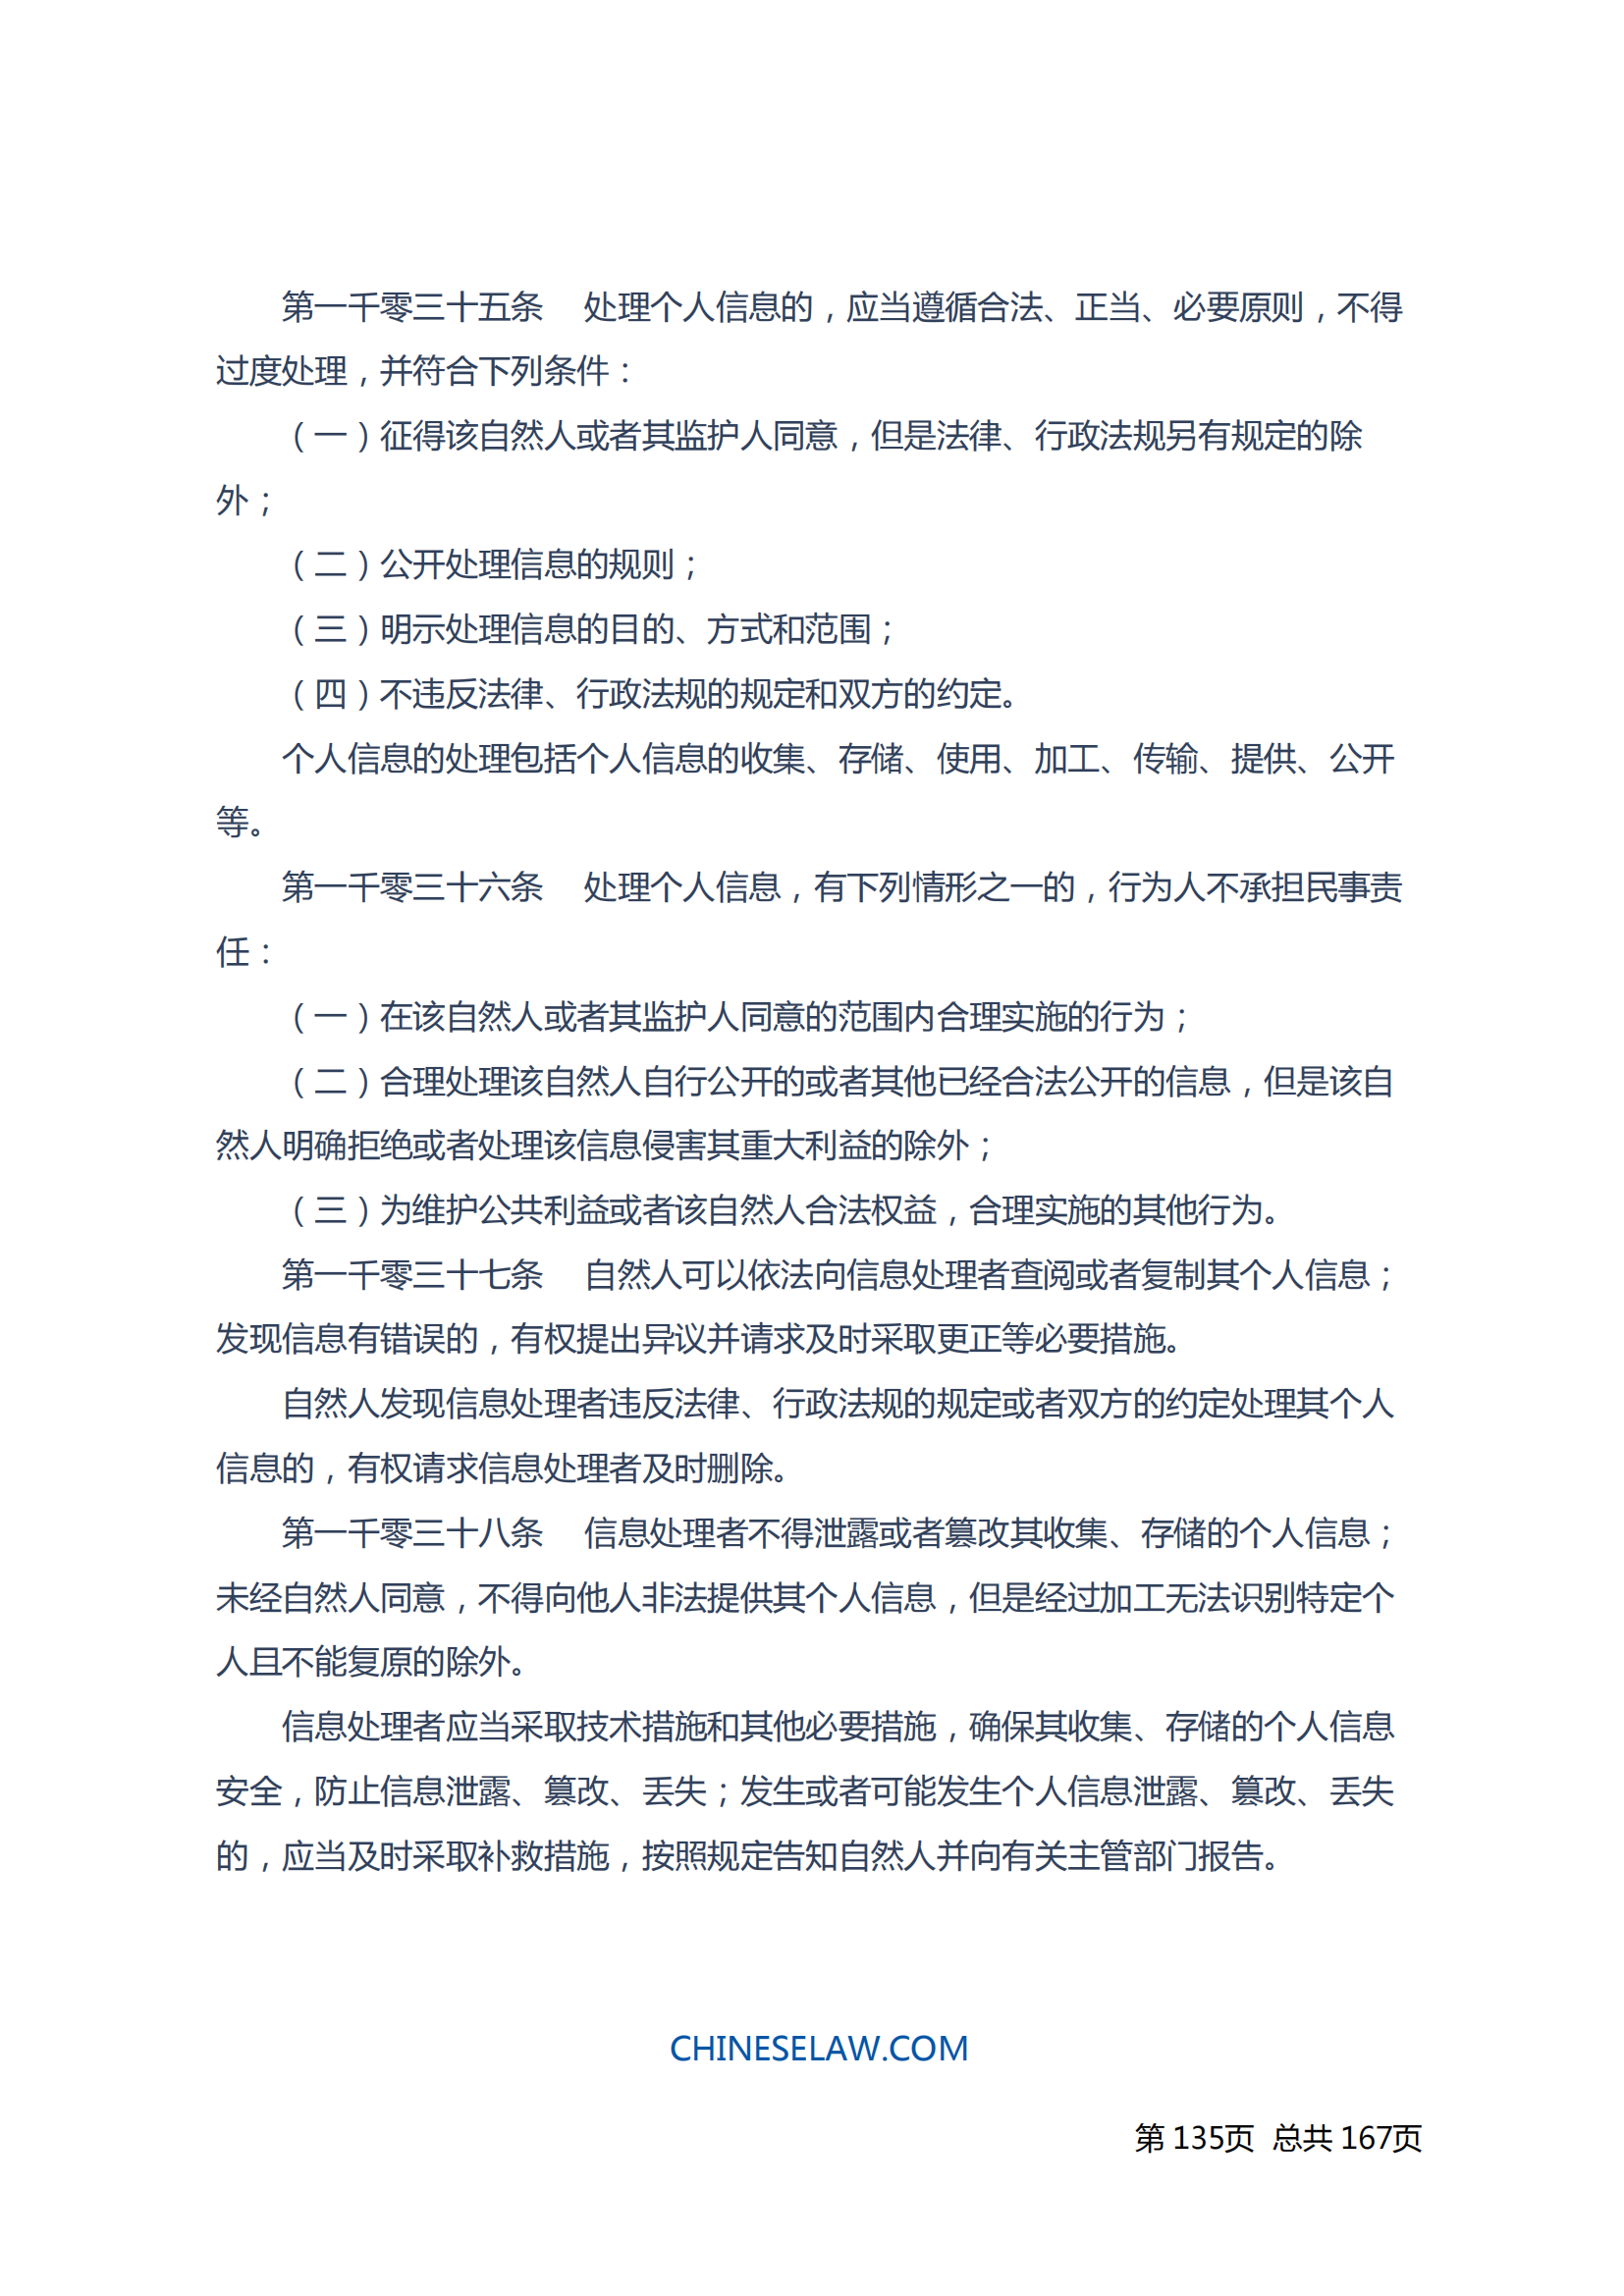 中华人民共和国民法典_134